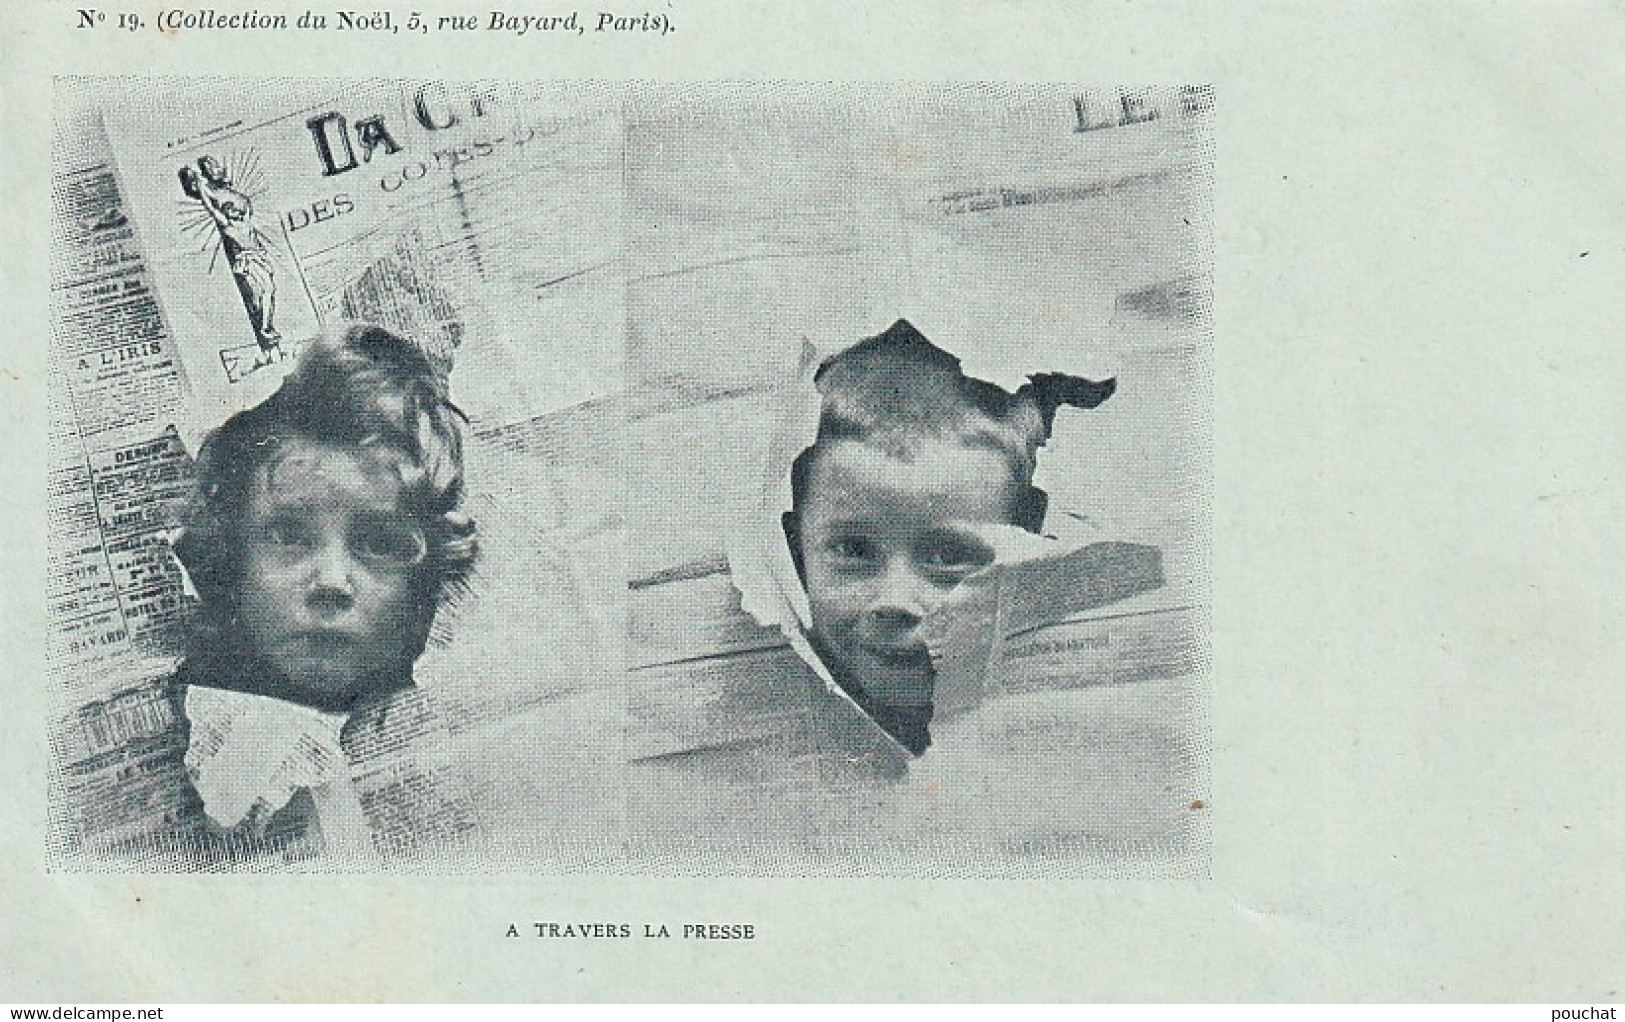 UR Nw40- " A TRAVERS LA PRESSE " - TETES D'ENFANTS DECHIRANT DES JOURNAUX - COLLECTION DU NOEL , PARIS - N°19 - Scenes & Landscapes